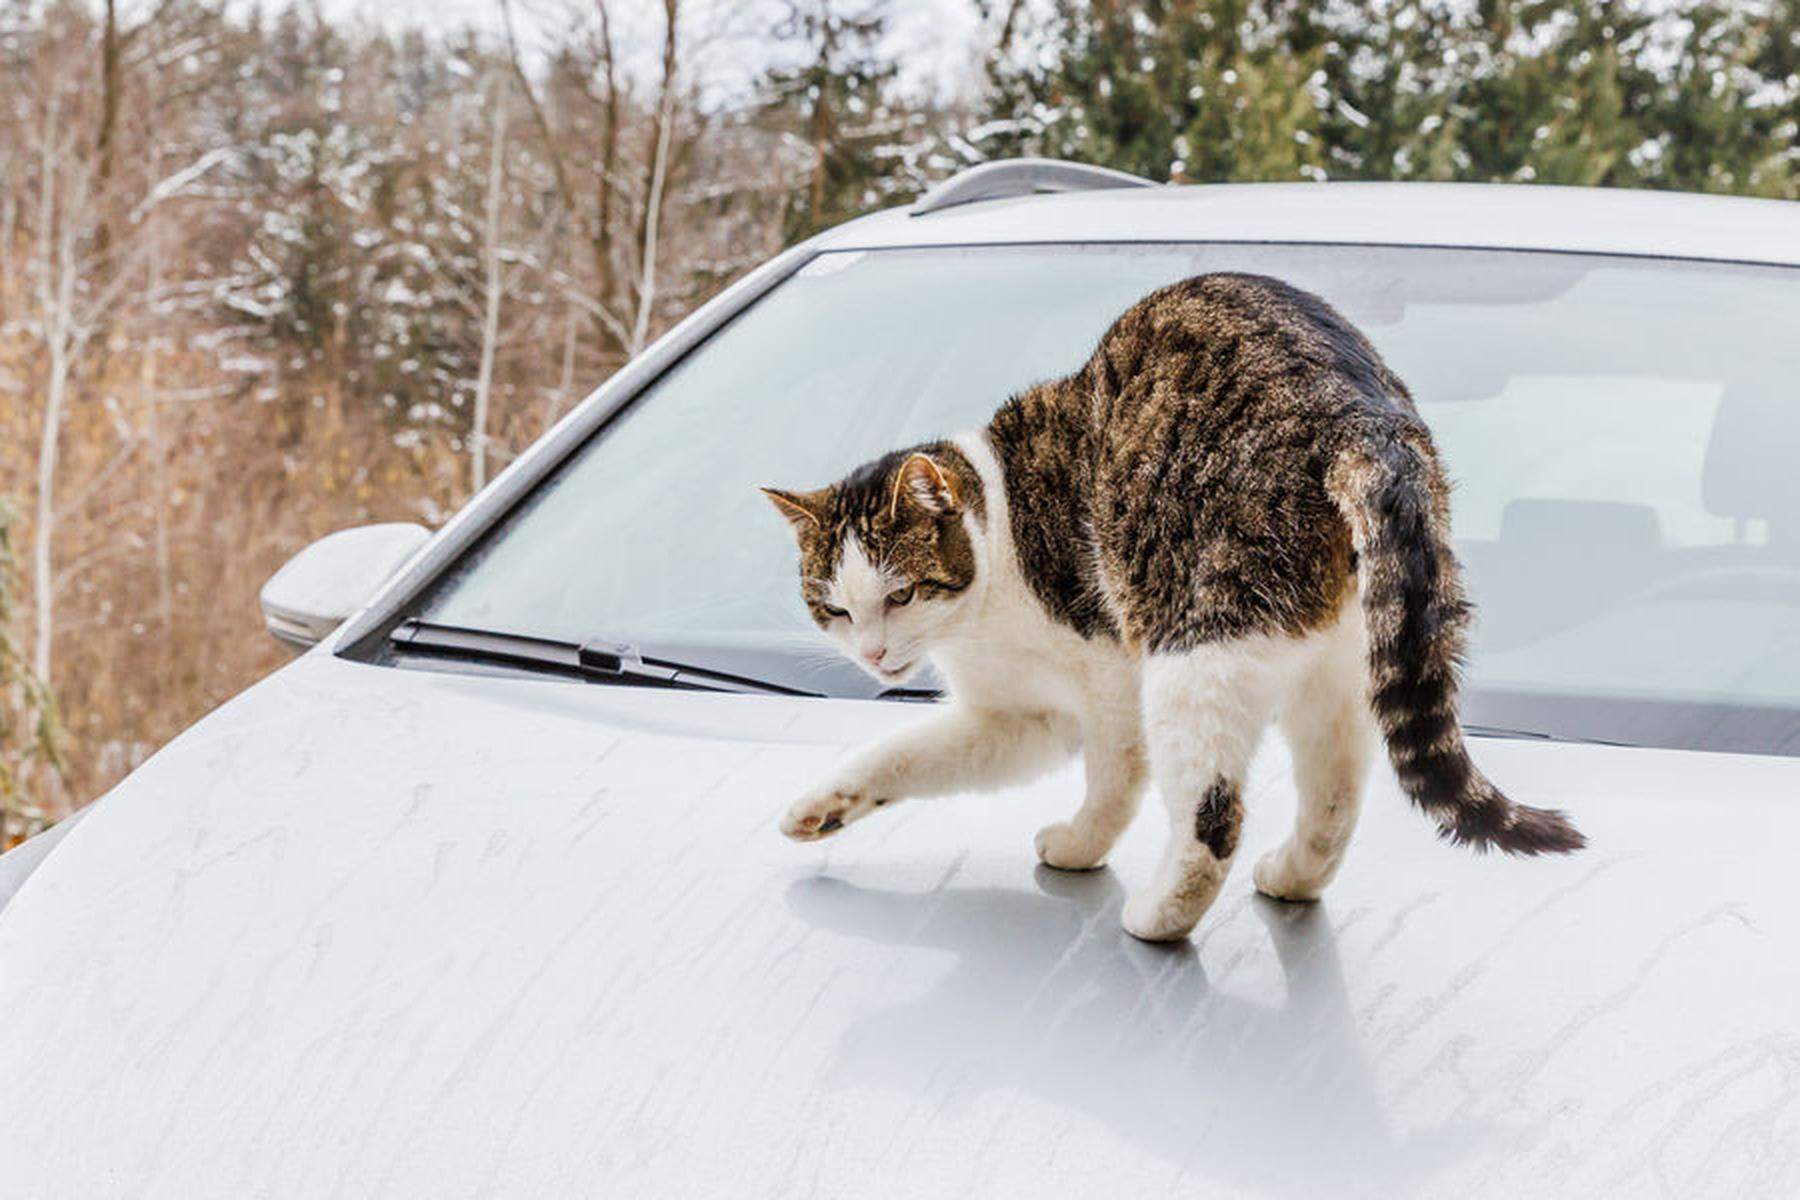 Kratzer im Lack  Katze legte sich auf Auto: Kärntner klagte